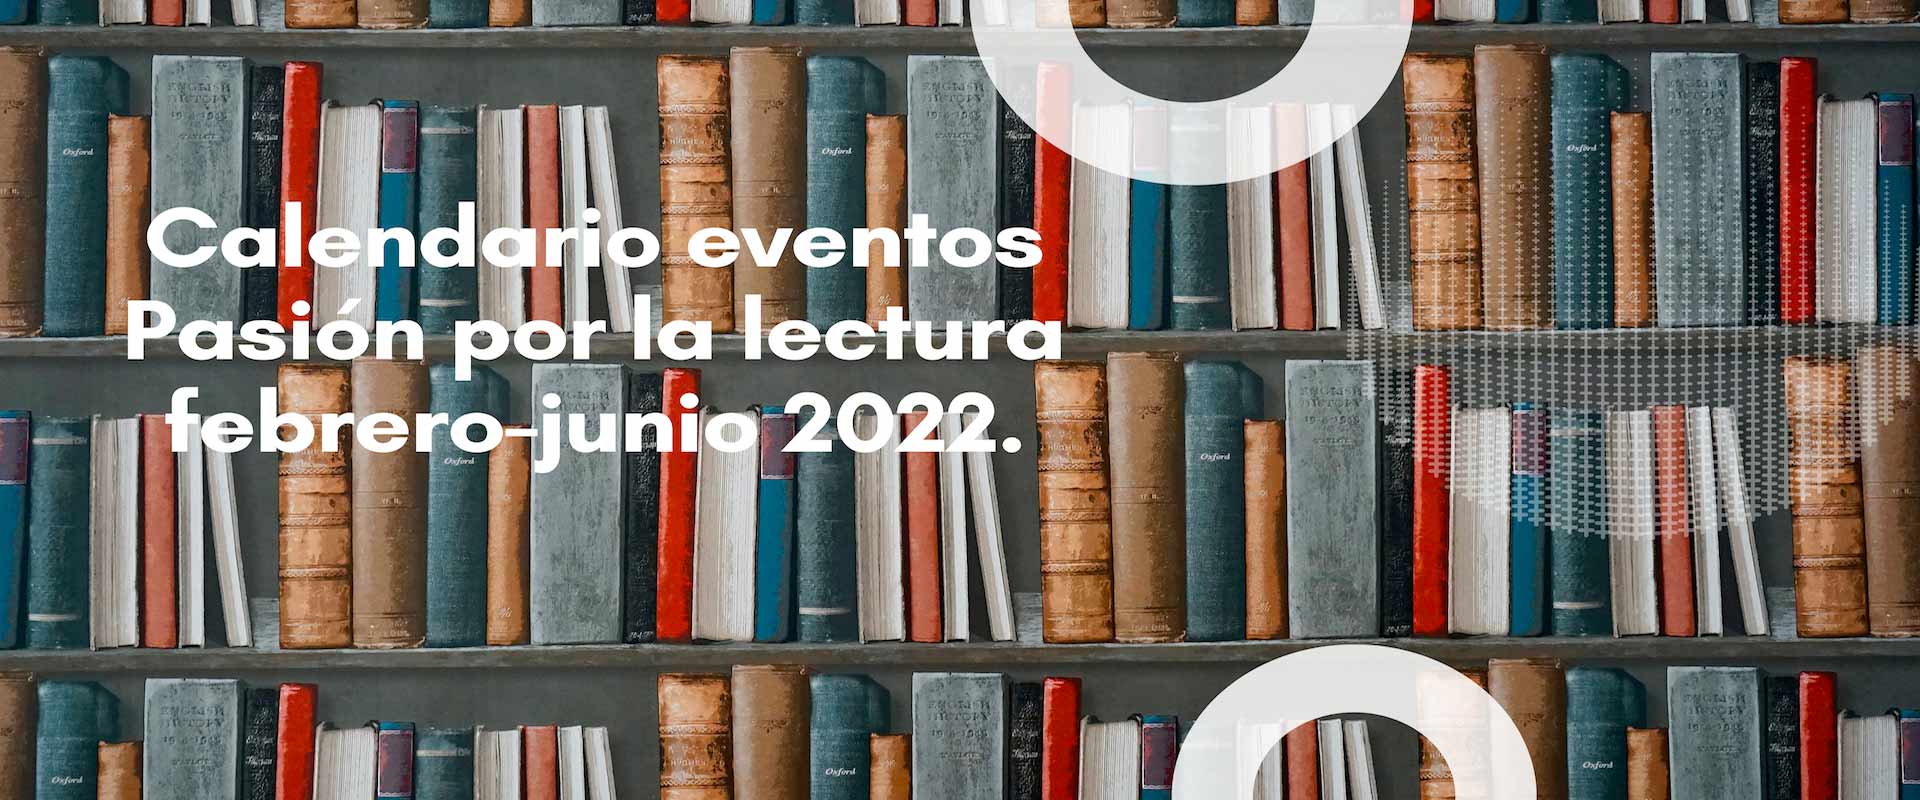 Calendario eventos Pasión por la lectura febrero-junio 2022